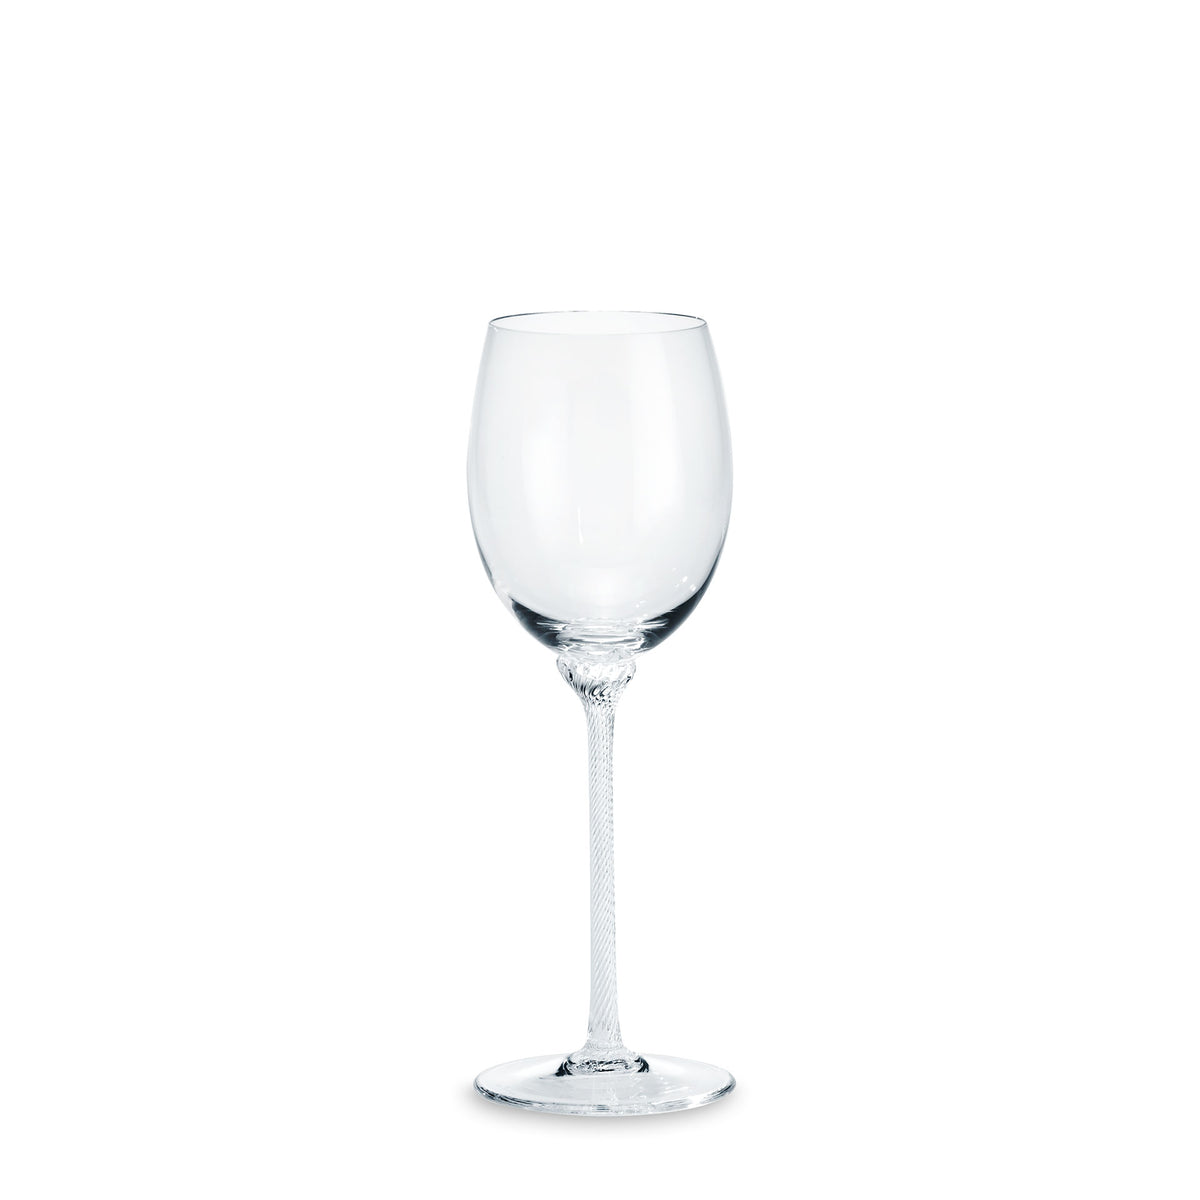 Château Sauvignon Blanc-Glas - ABVERKAUF - 50% REDUZIERT